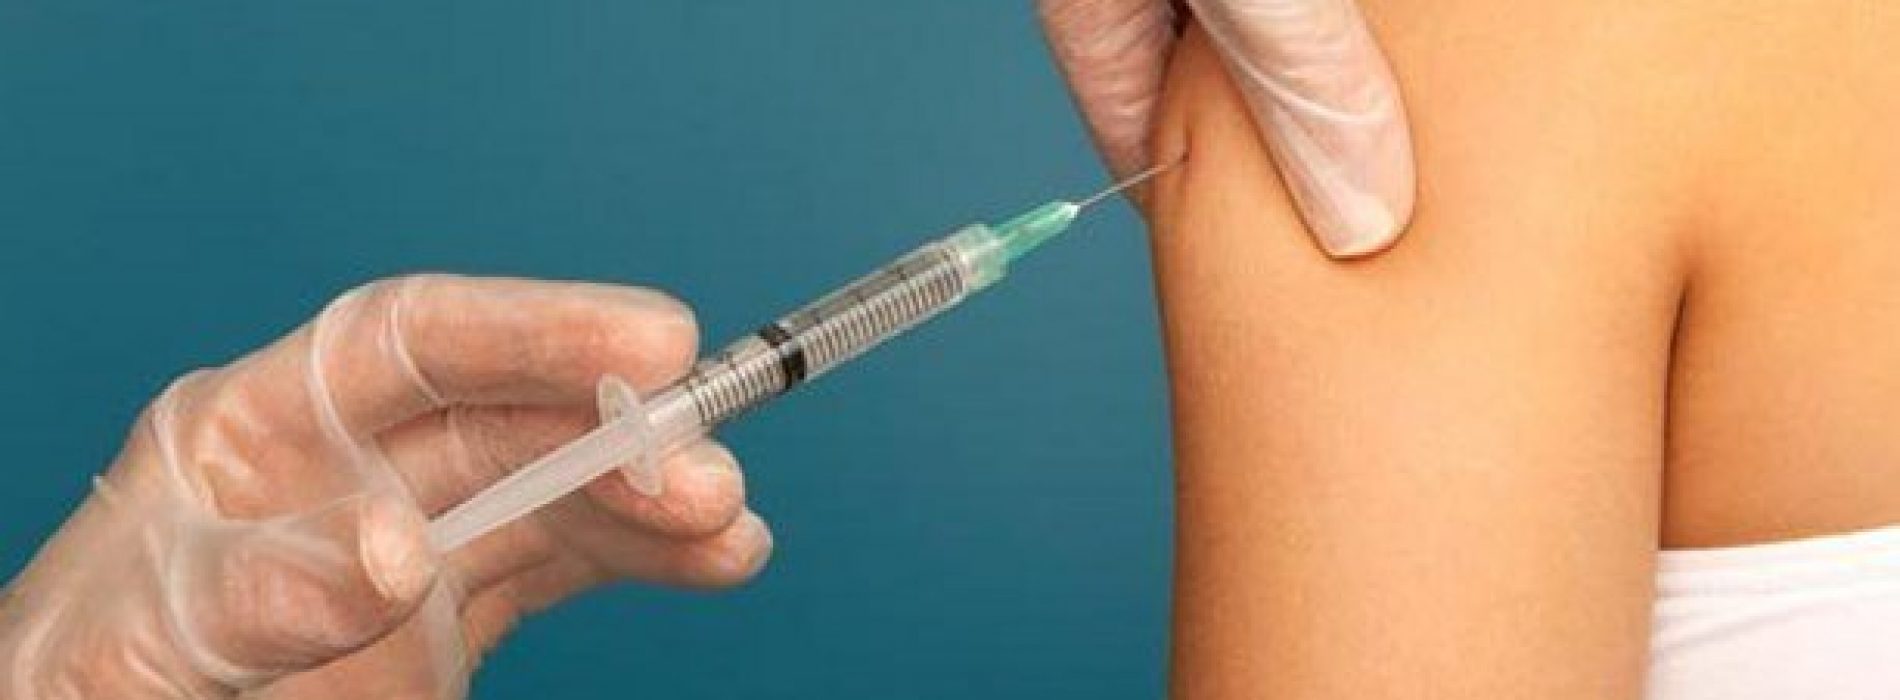 Schokkend: honderden Ierse meisjes hadden medische hulp nodig na HPV-vaccin. Spannen de overheid en media samen?